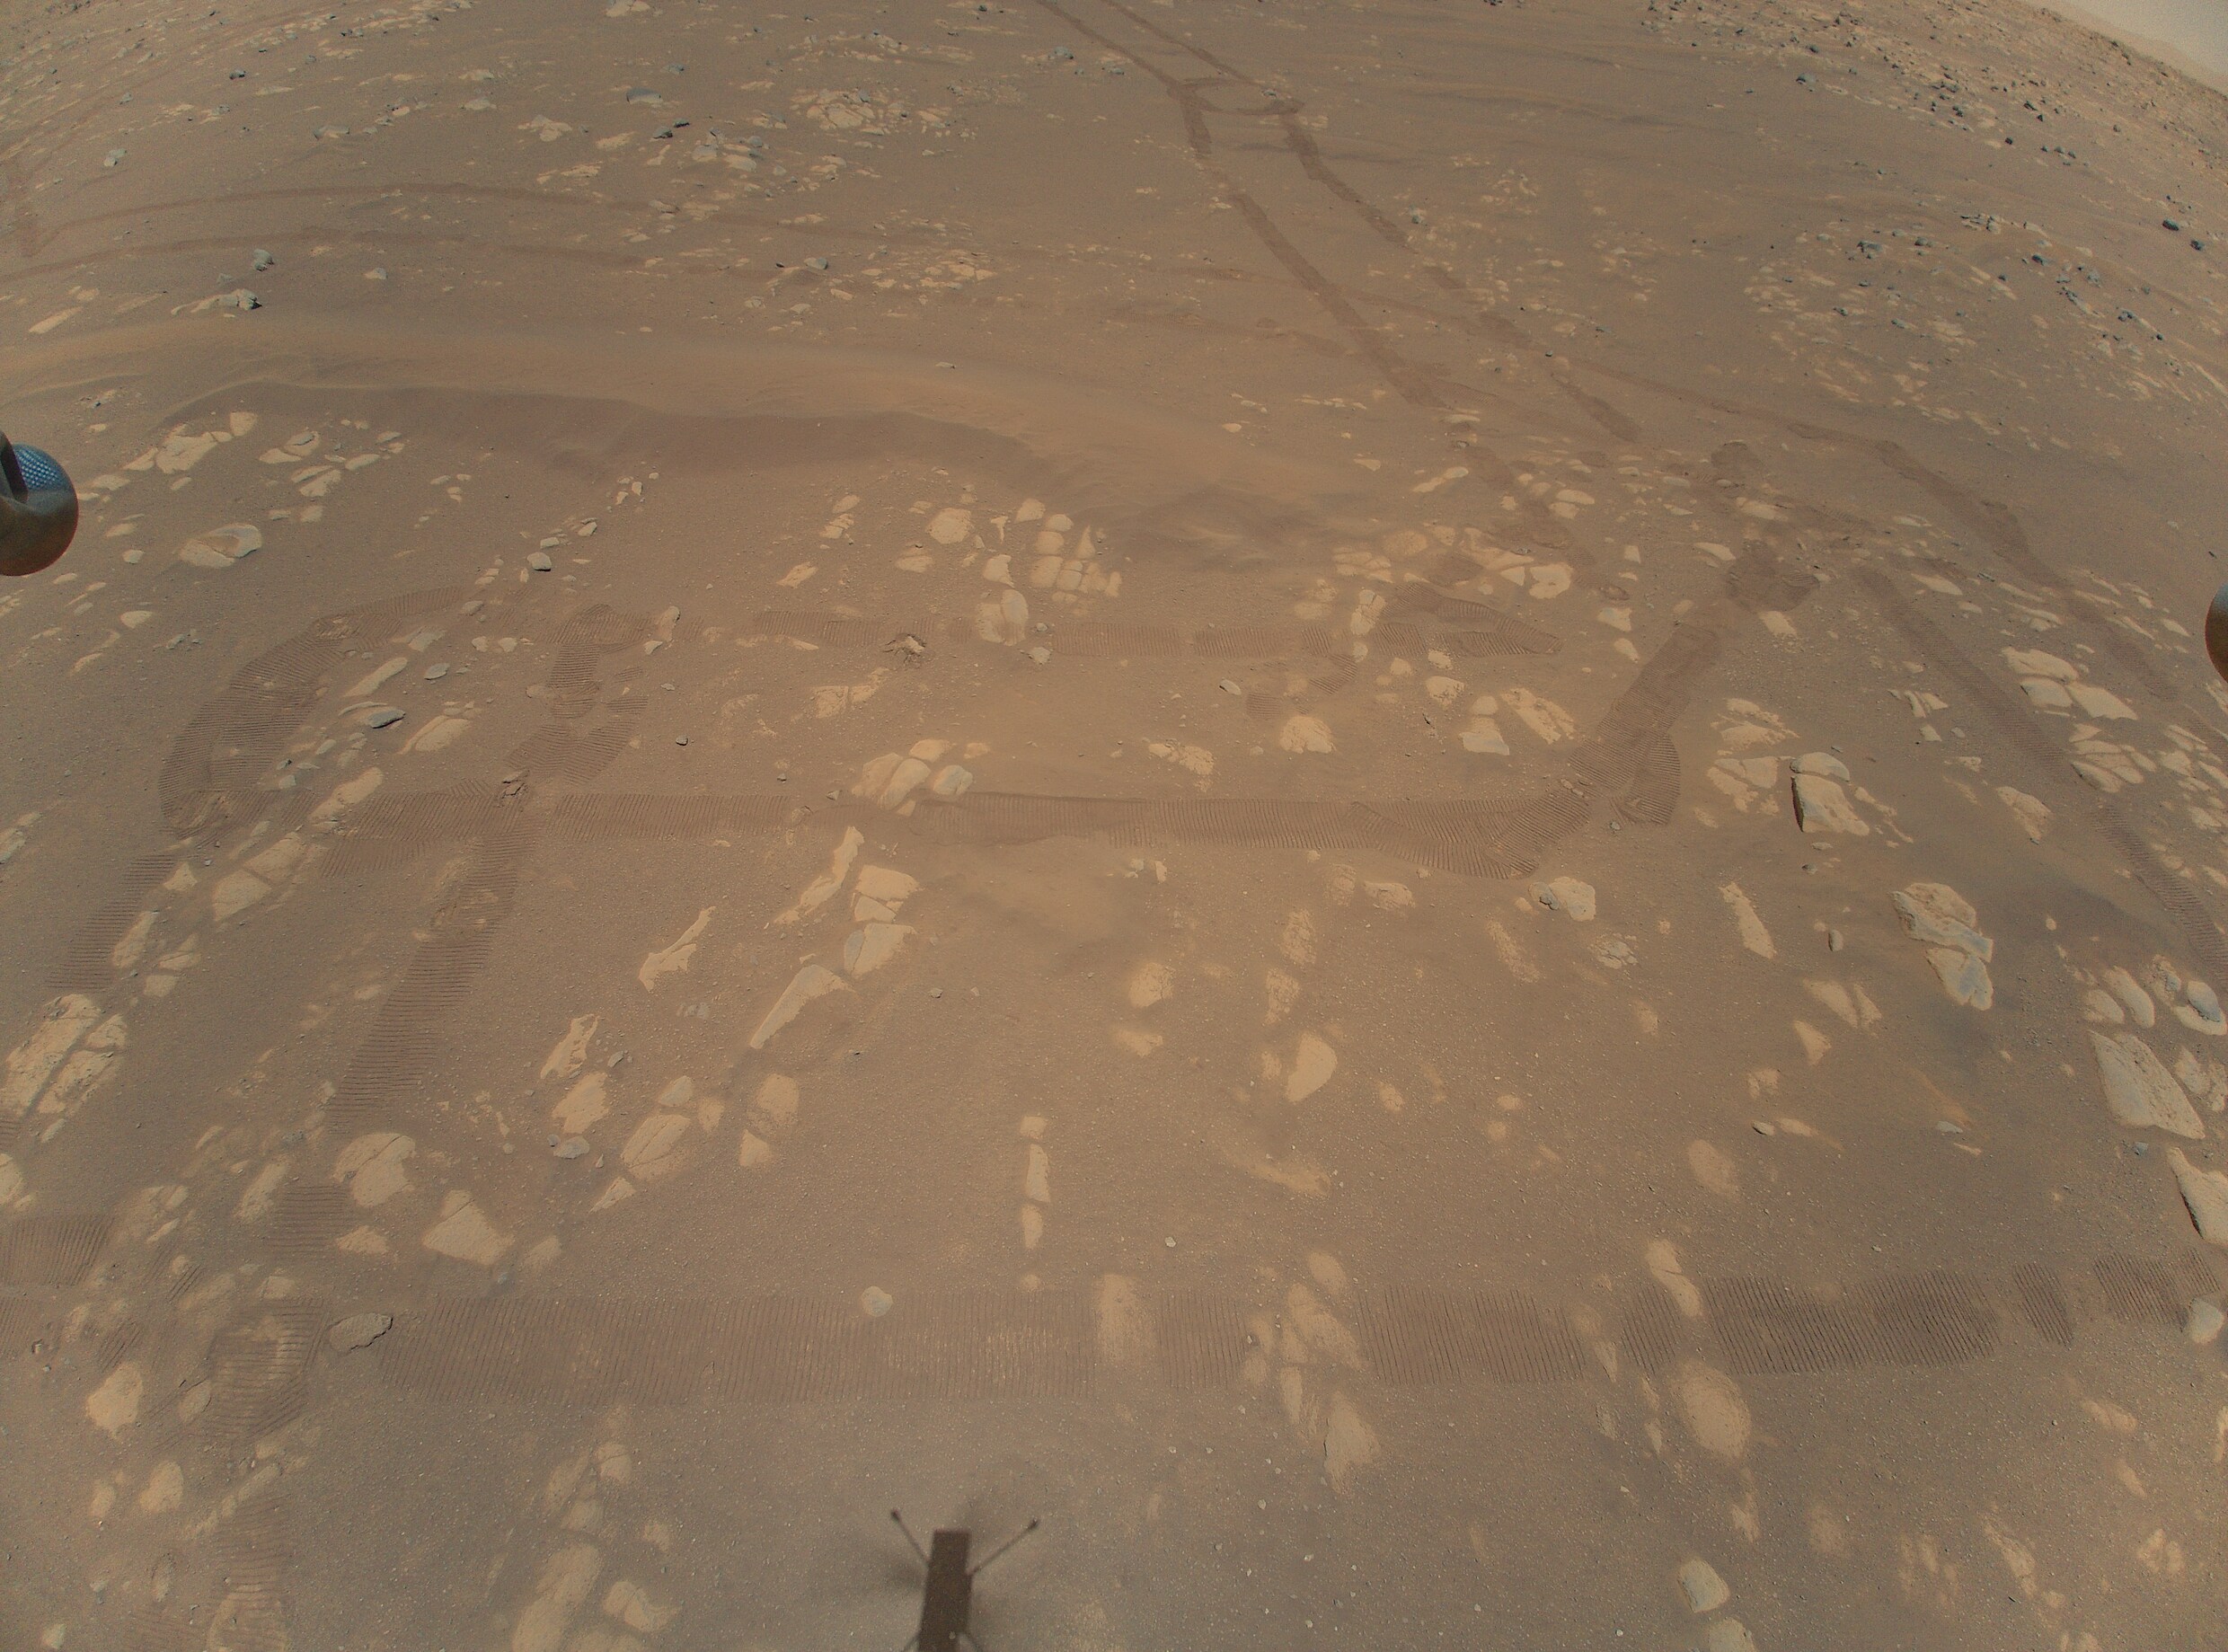 De marswagen Perseverance als toerist: de mooiste beelden van zijn eerste honderd dagen op Mars